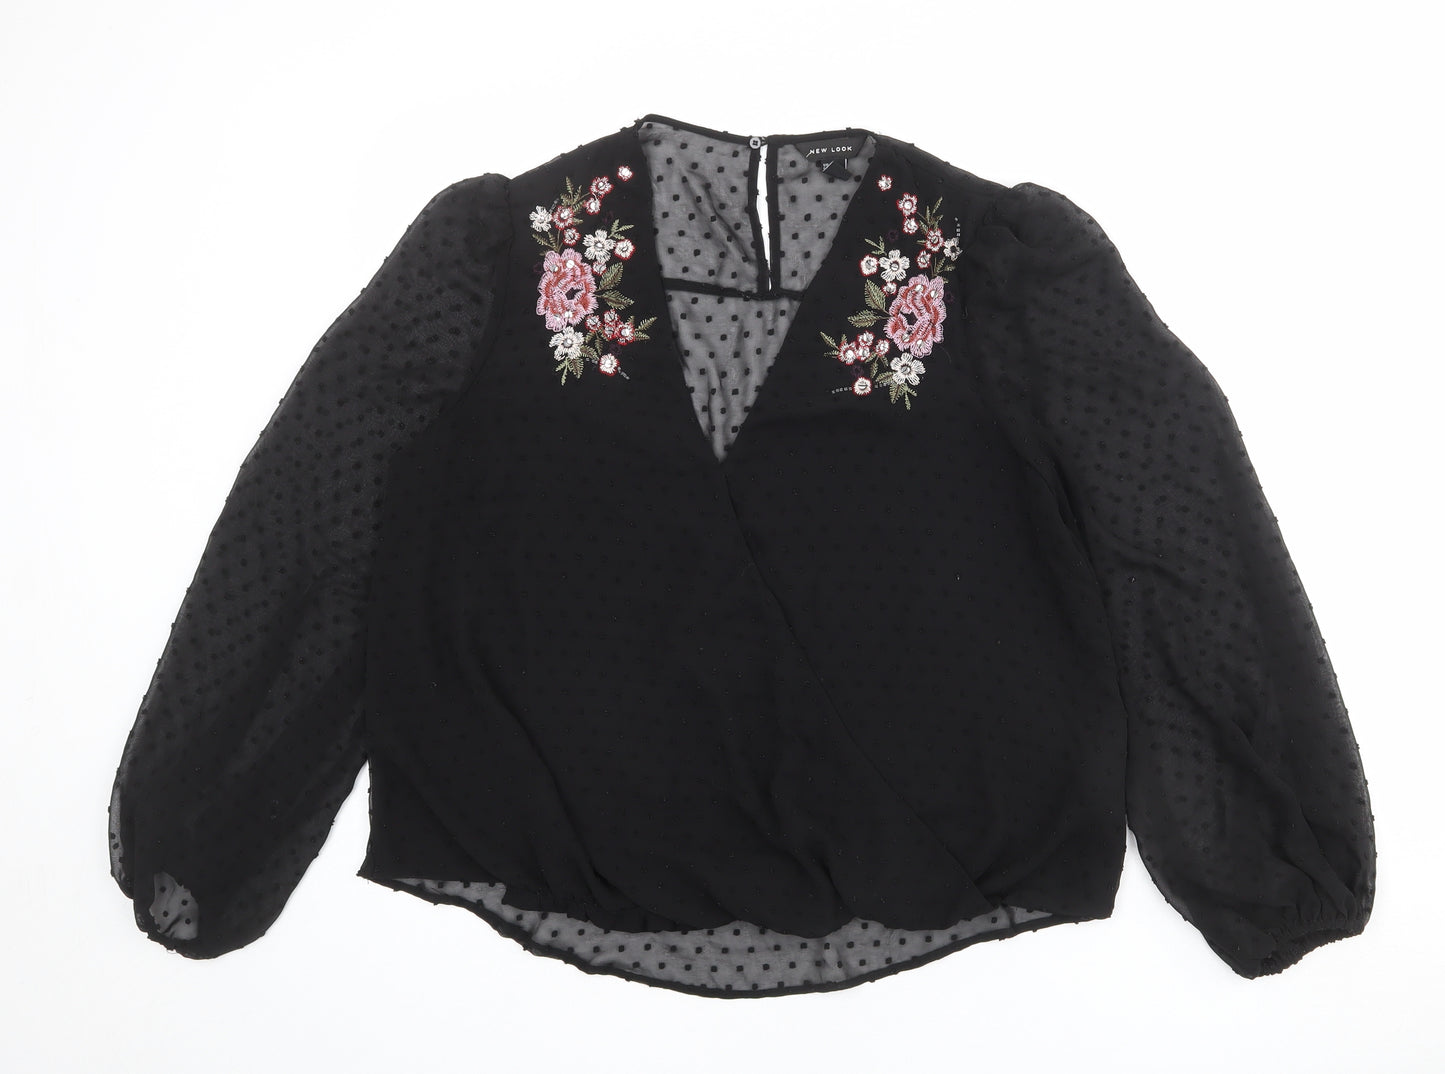 New Look Womens Black Polka Dot Polyester Basic Blouse Size 14 V-Neck - Flower Detail